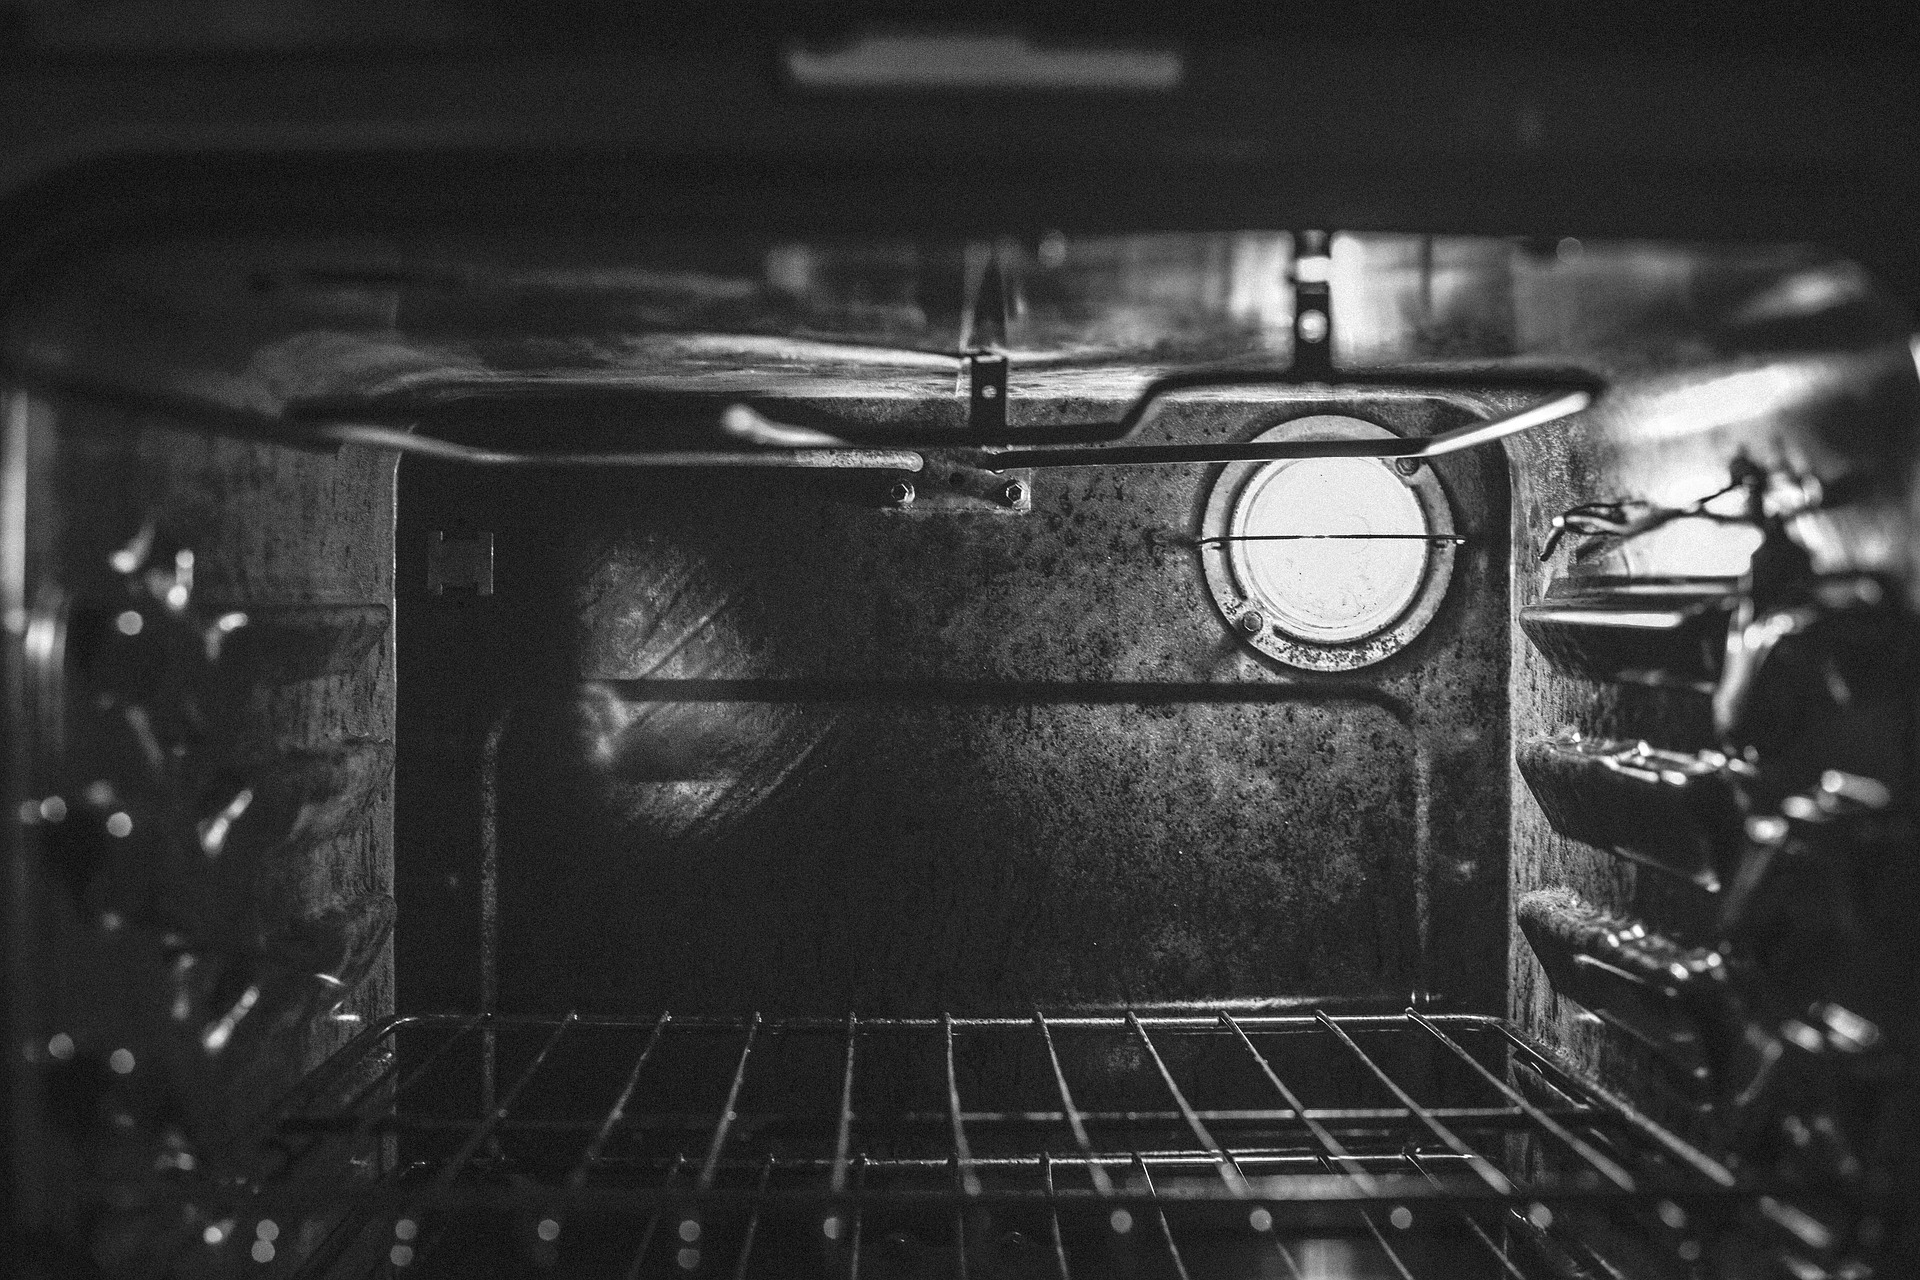 inside-oven